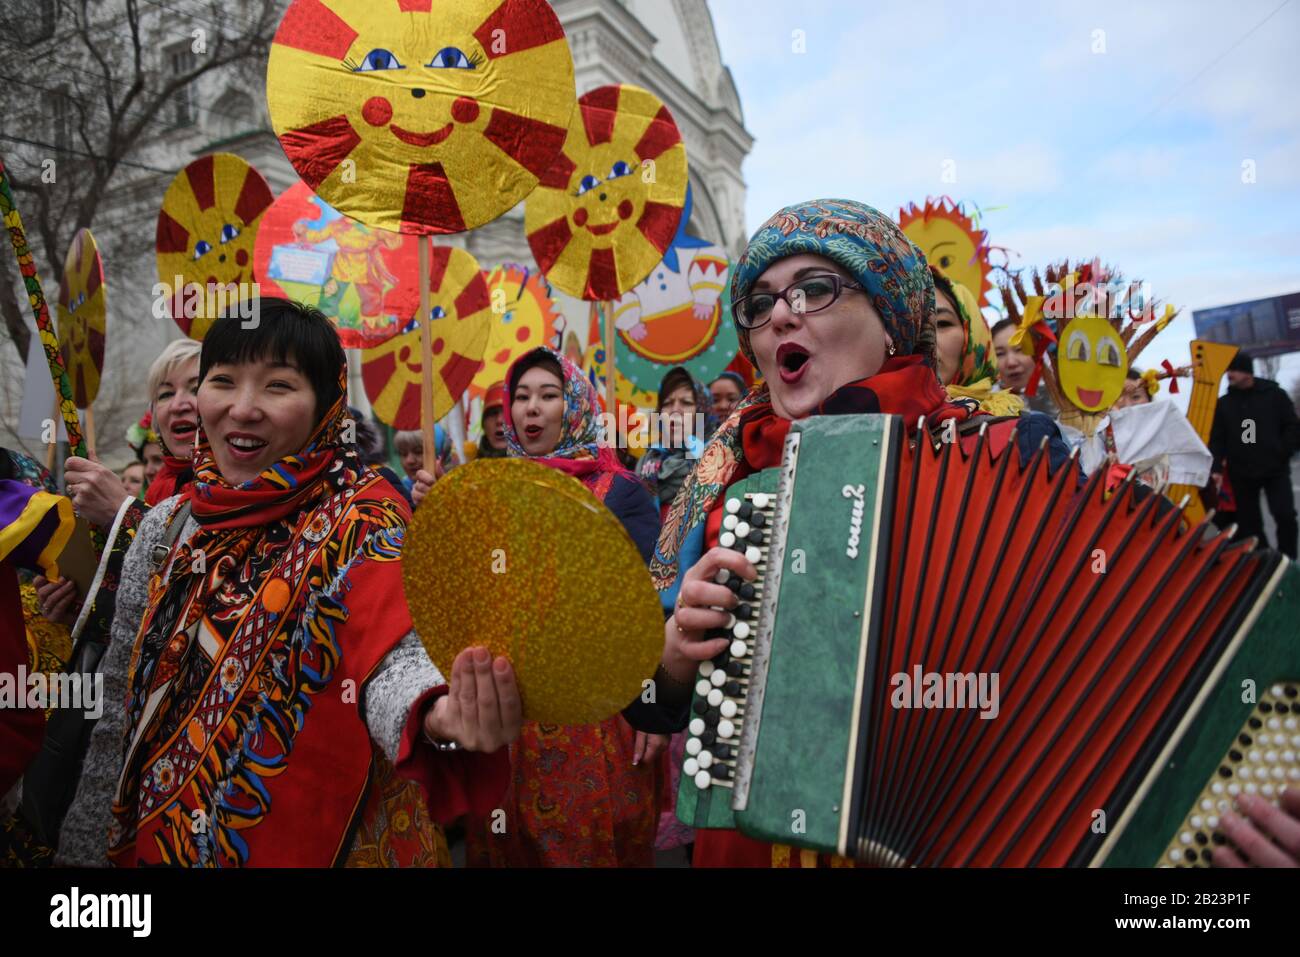 Maslenitsa or pancake week celebrations in Astrakhan, Russia Stock Photo